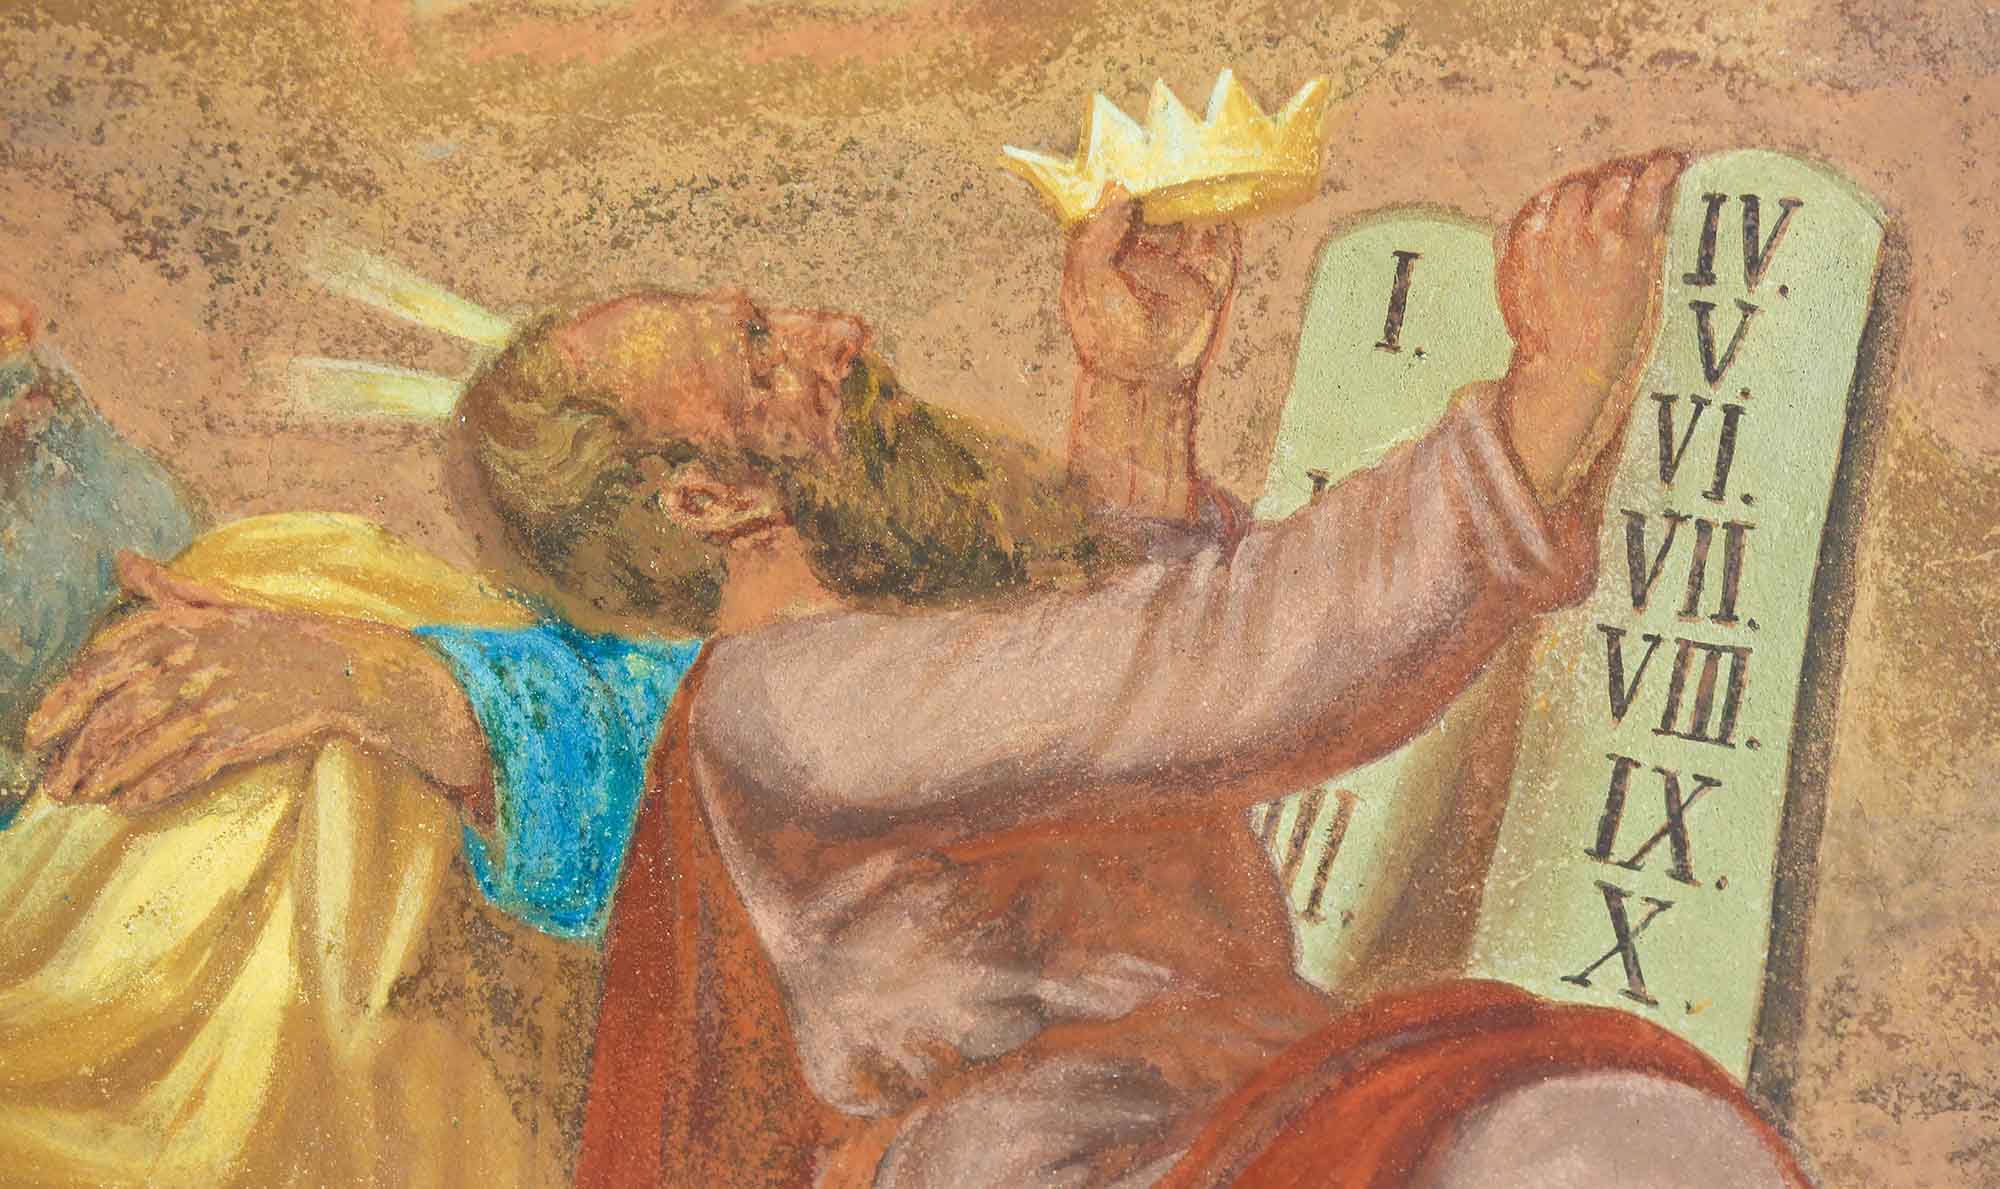 Moses receiving the 10 commandments